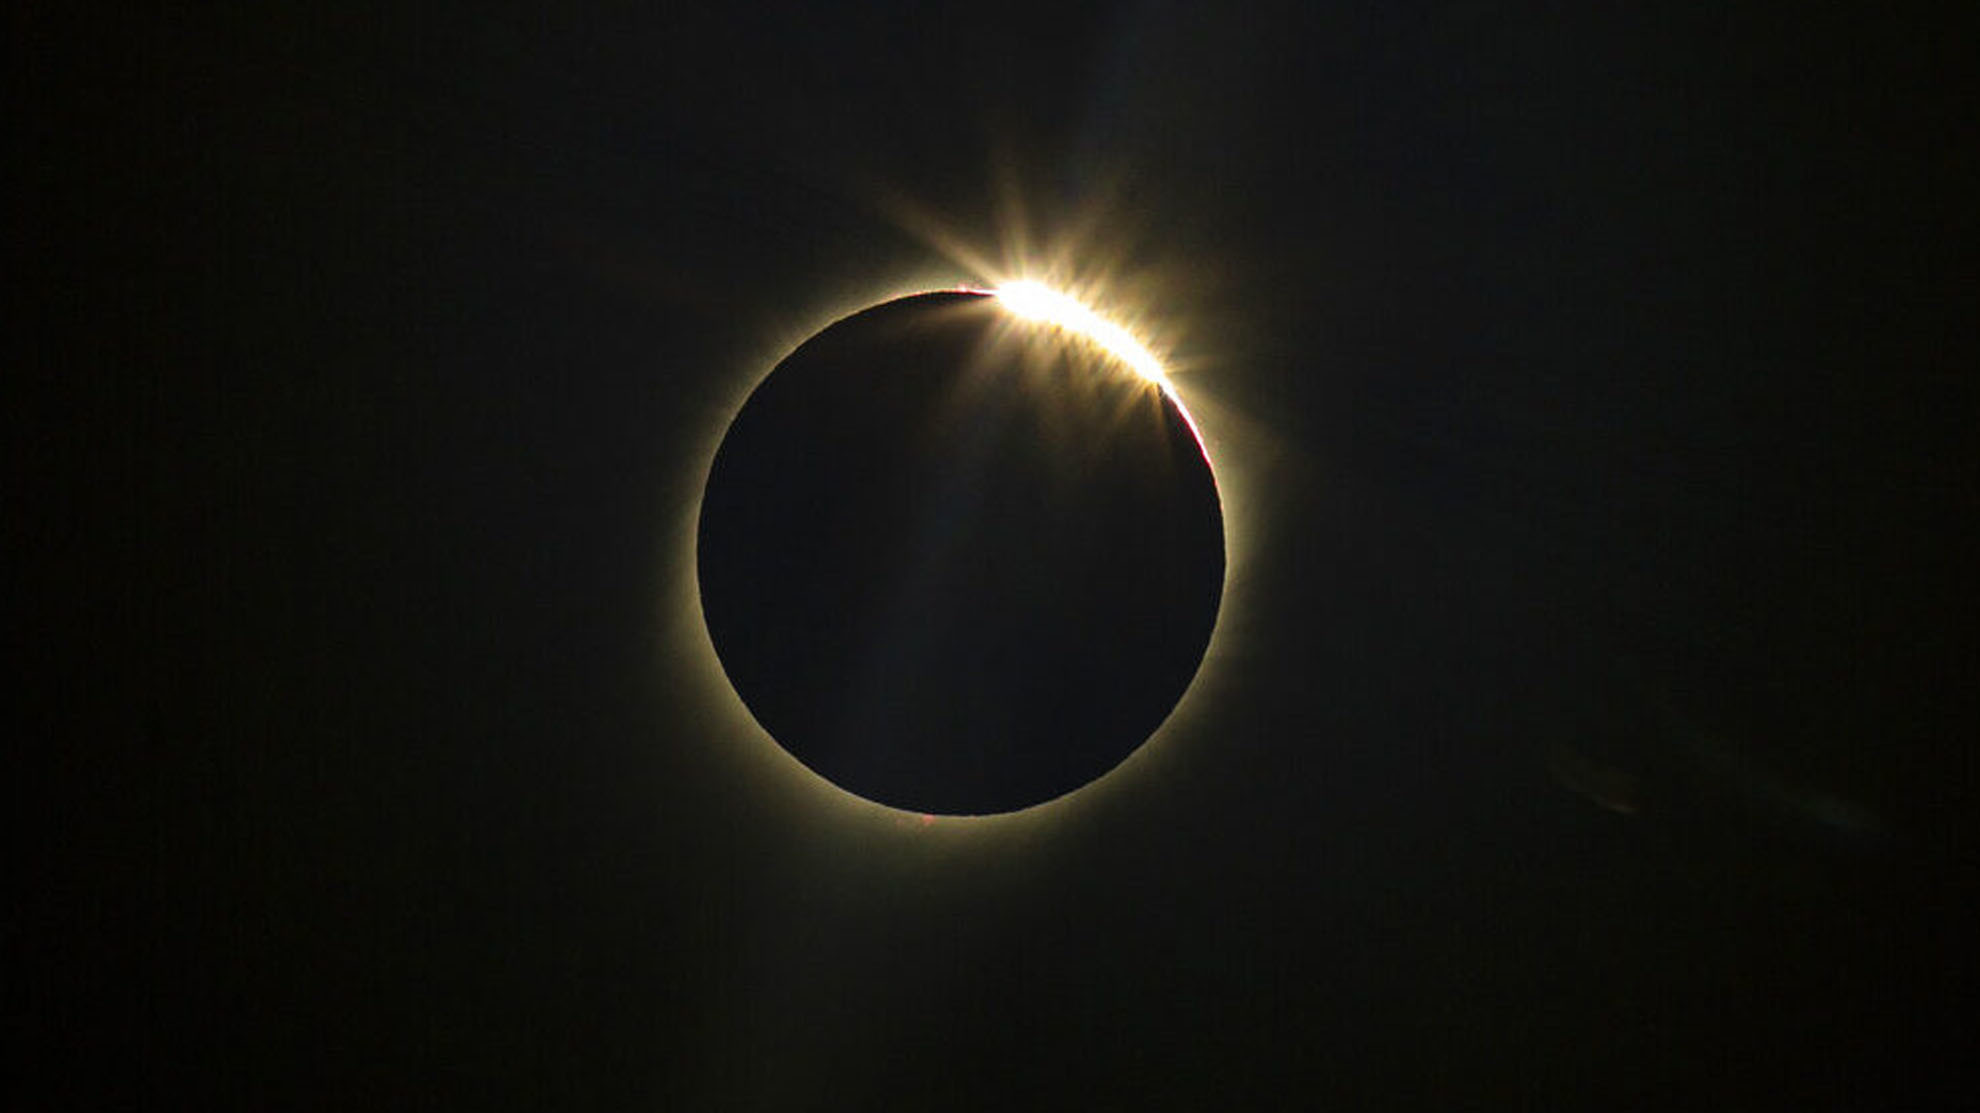 Cmo ver un eclipse solar sin daar los ojos